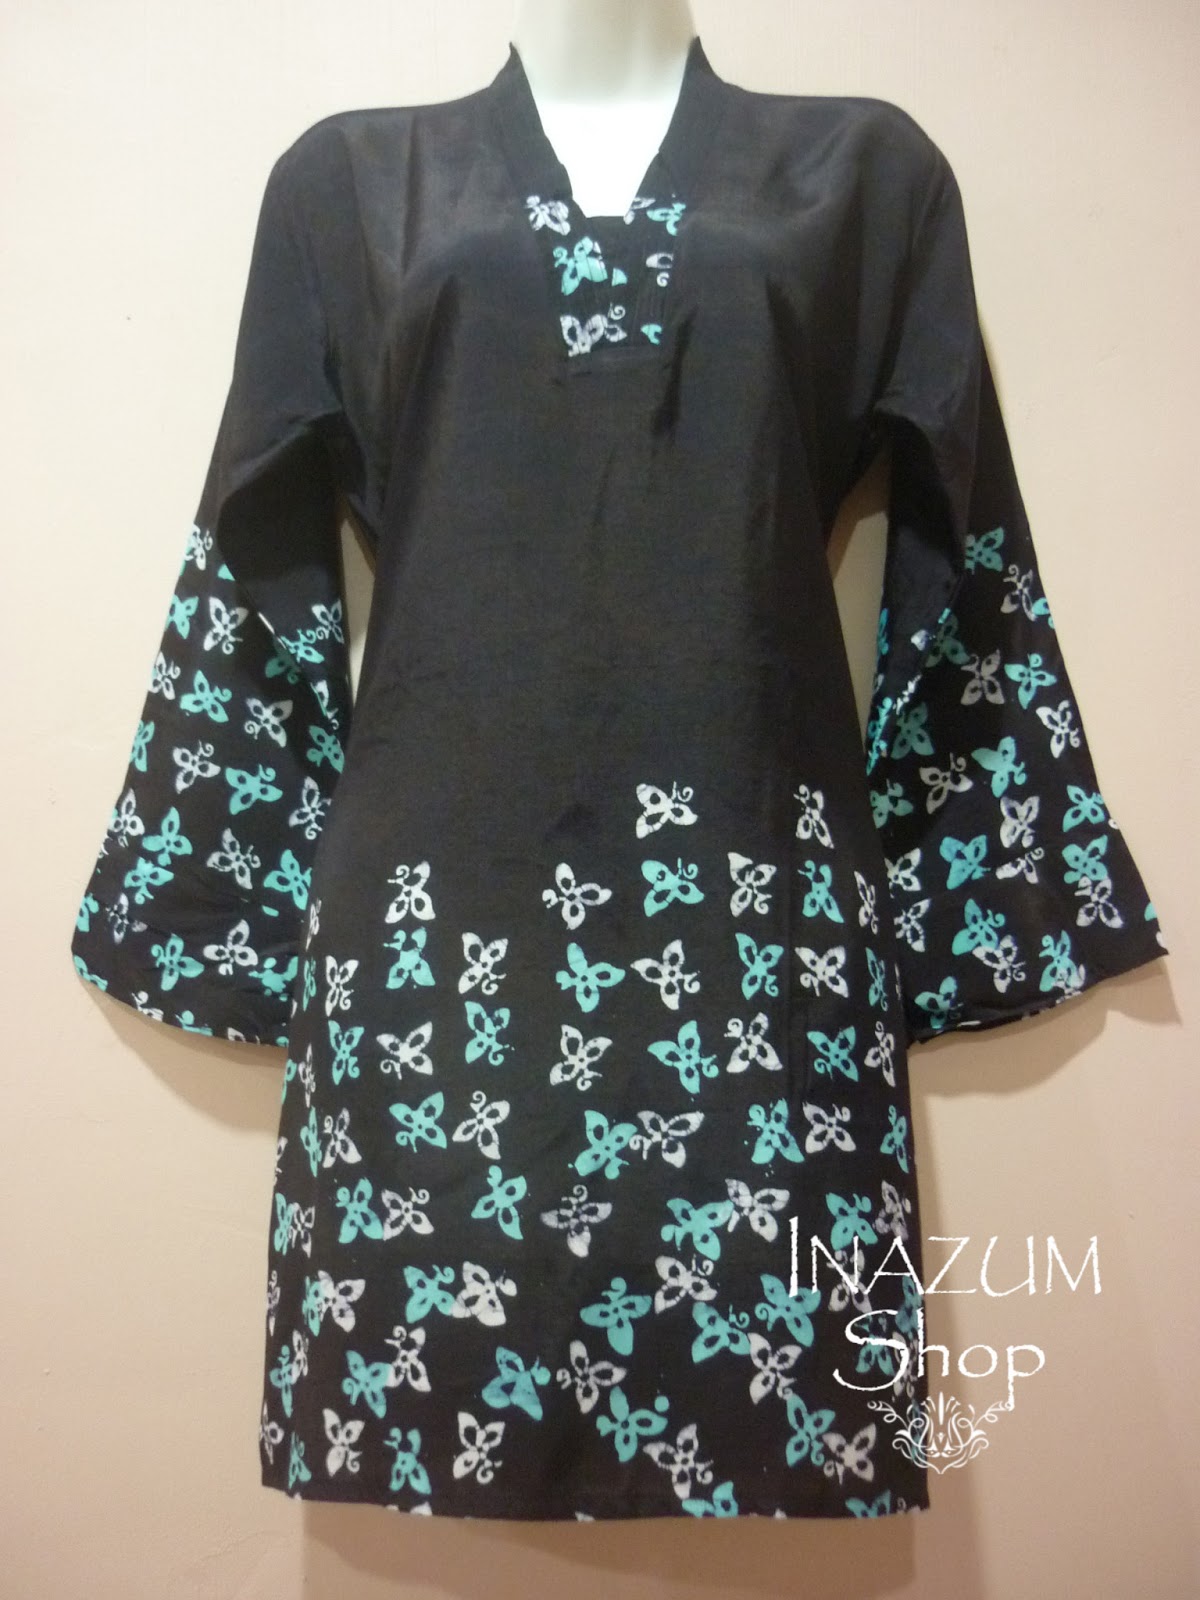 Inazum Shop: Blouse Floral Batik Terengganu